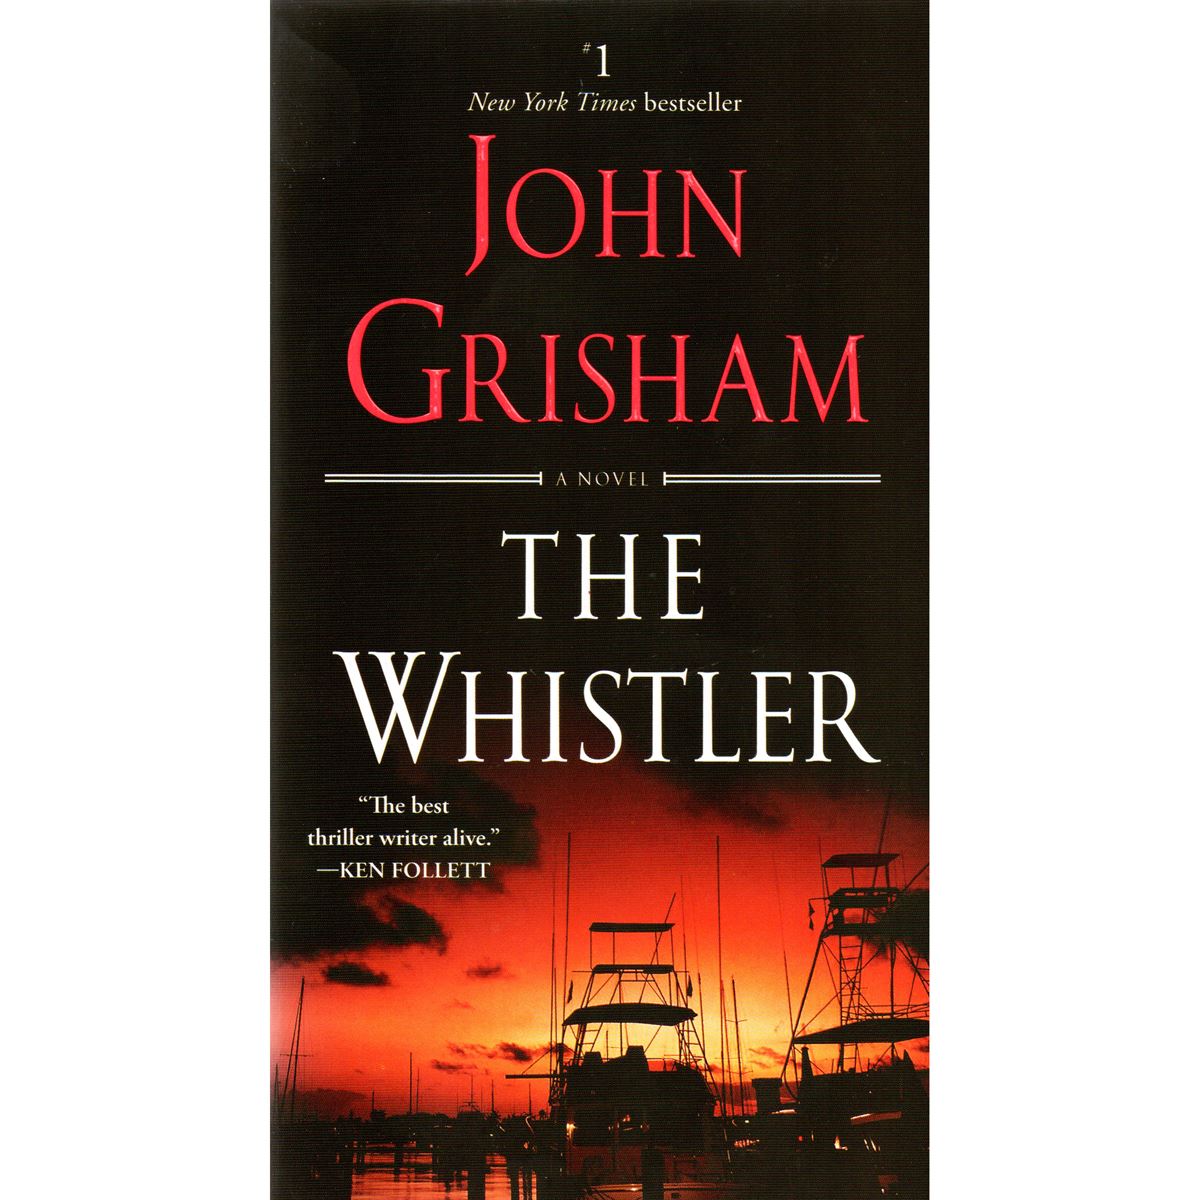 The whistler